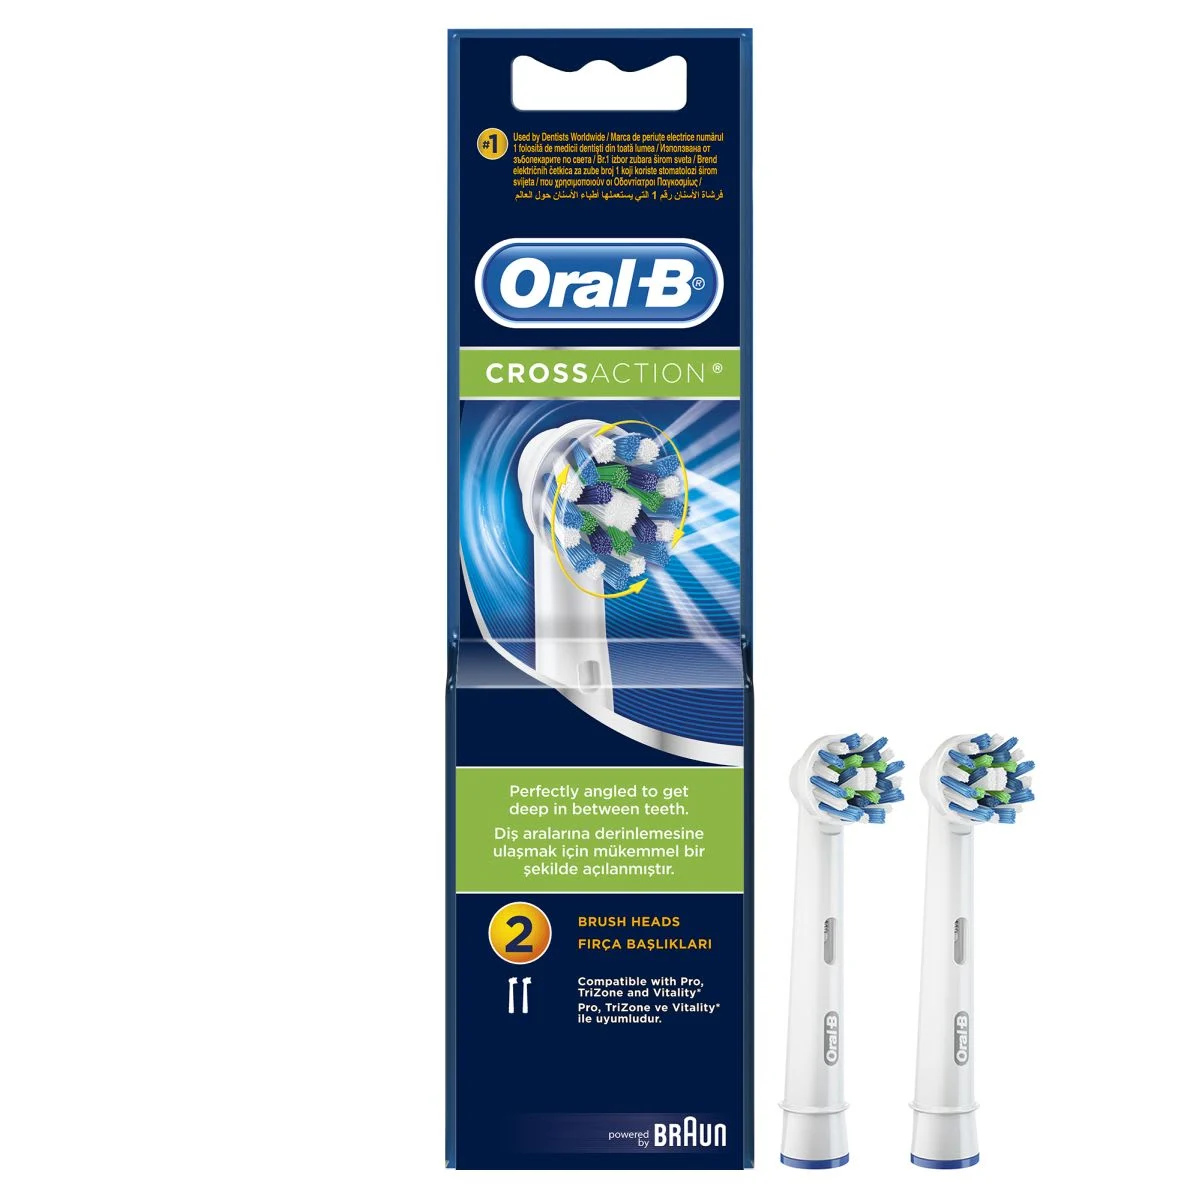 Oral-B Crossaction Elektrikli Diş Fırçası İçin Yedek Başlıklar 